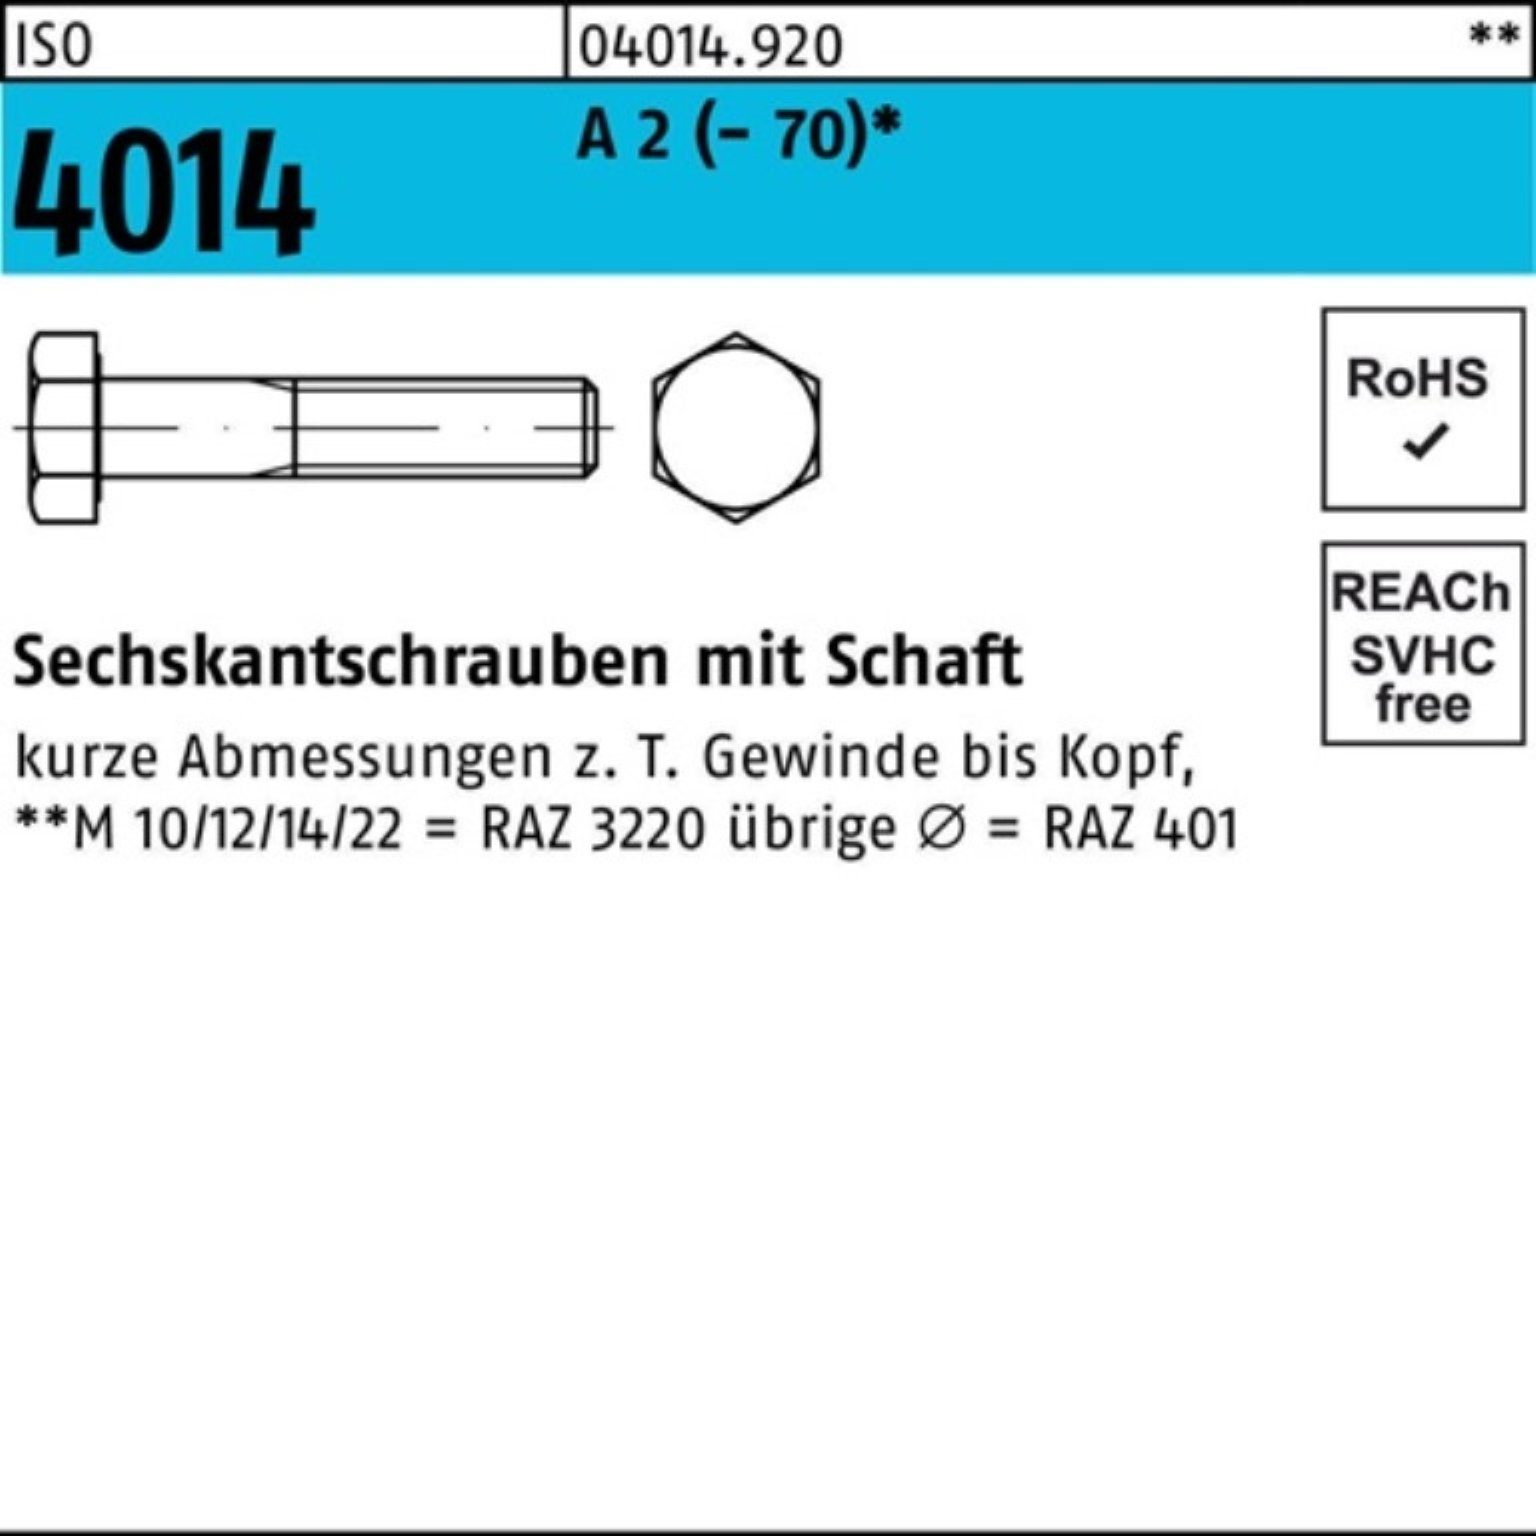 Pack Sechskantschraube 1 ISO A 4014 2 Schaft 100er Sechskantschraube M12x Bufab St 250 (70)